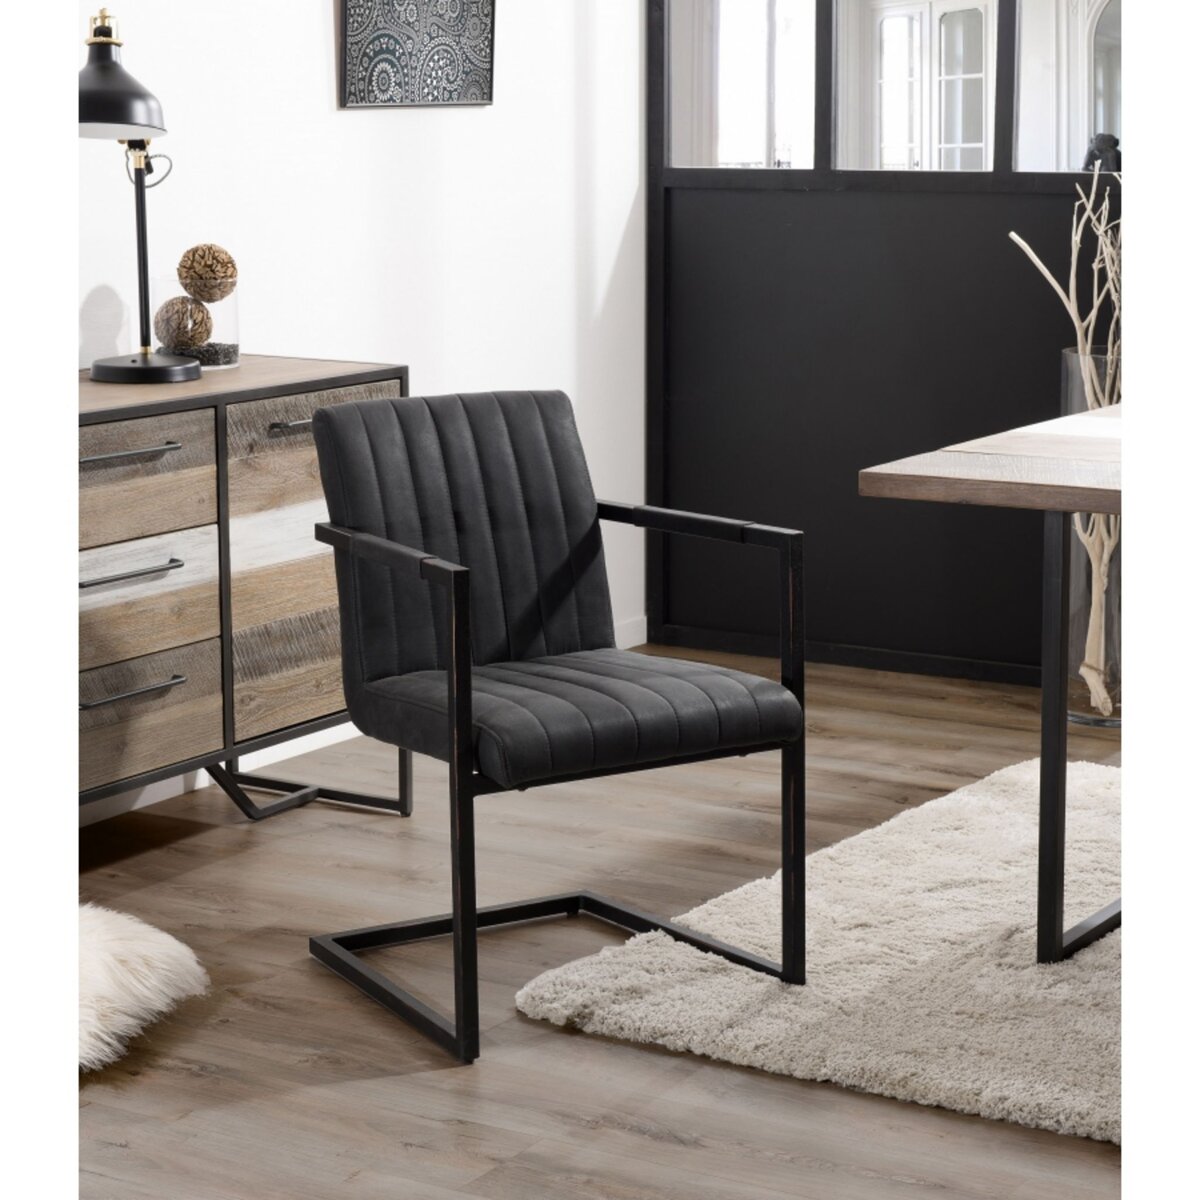 MACABANE ESTELLE - Lot de 2 fauteuils tissu gris anthracite pieds métal noir